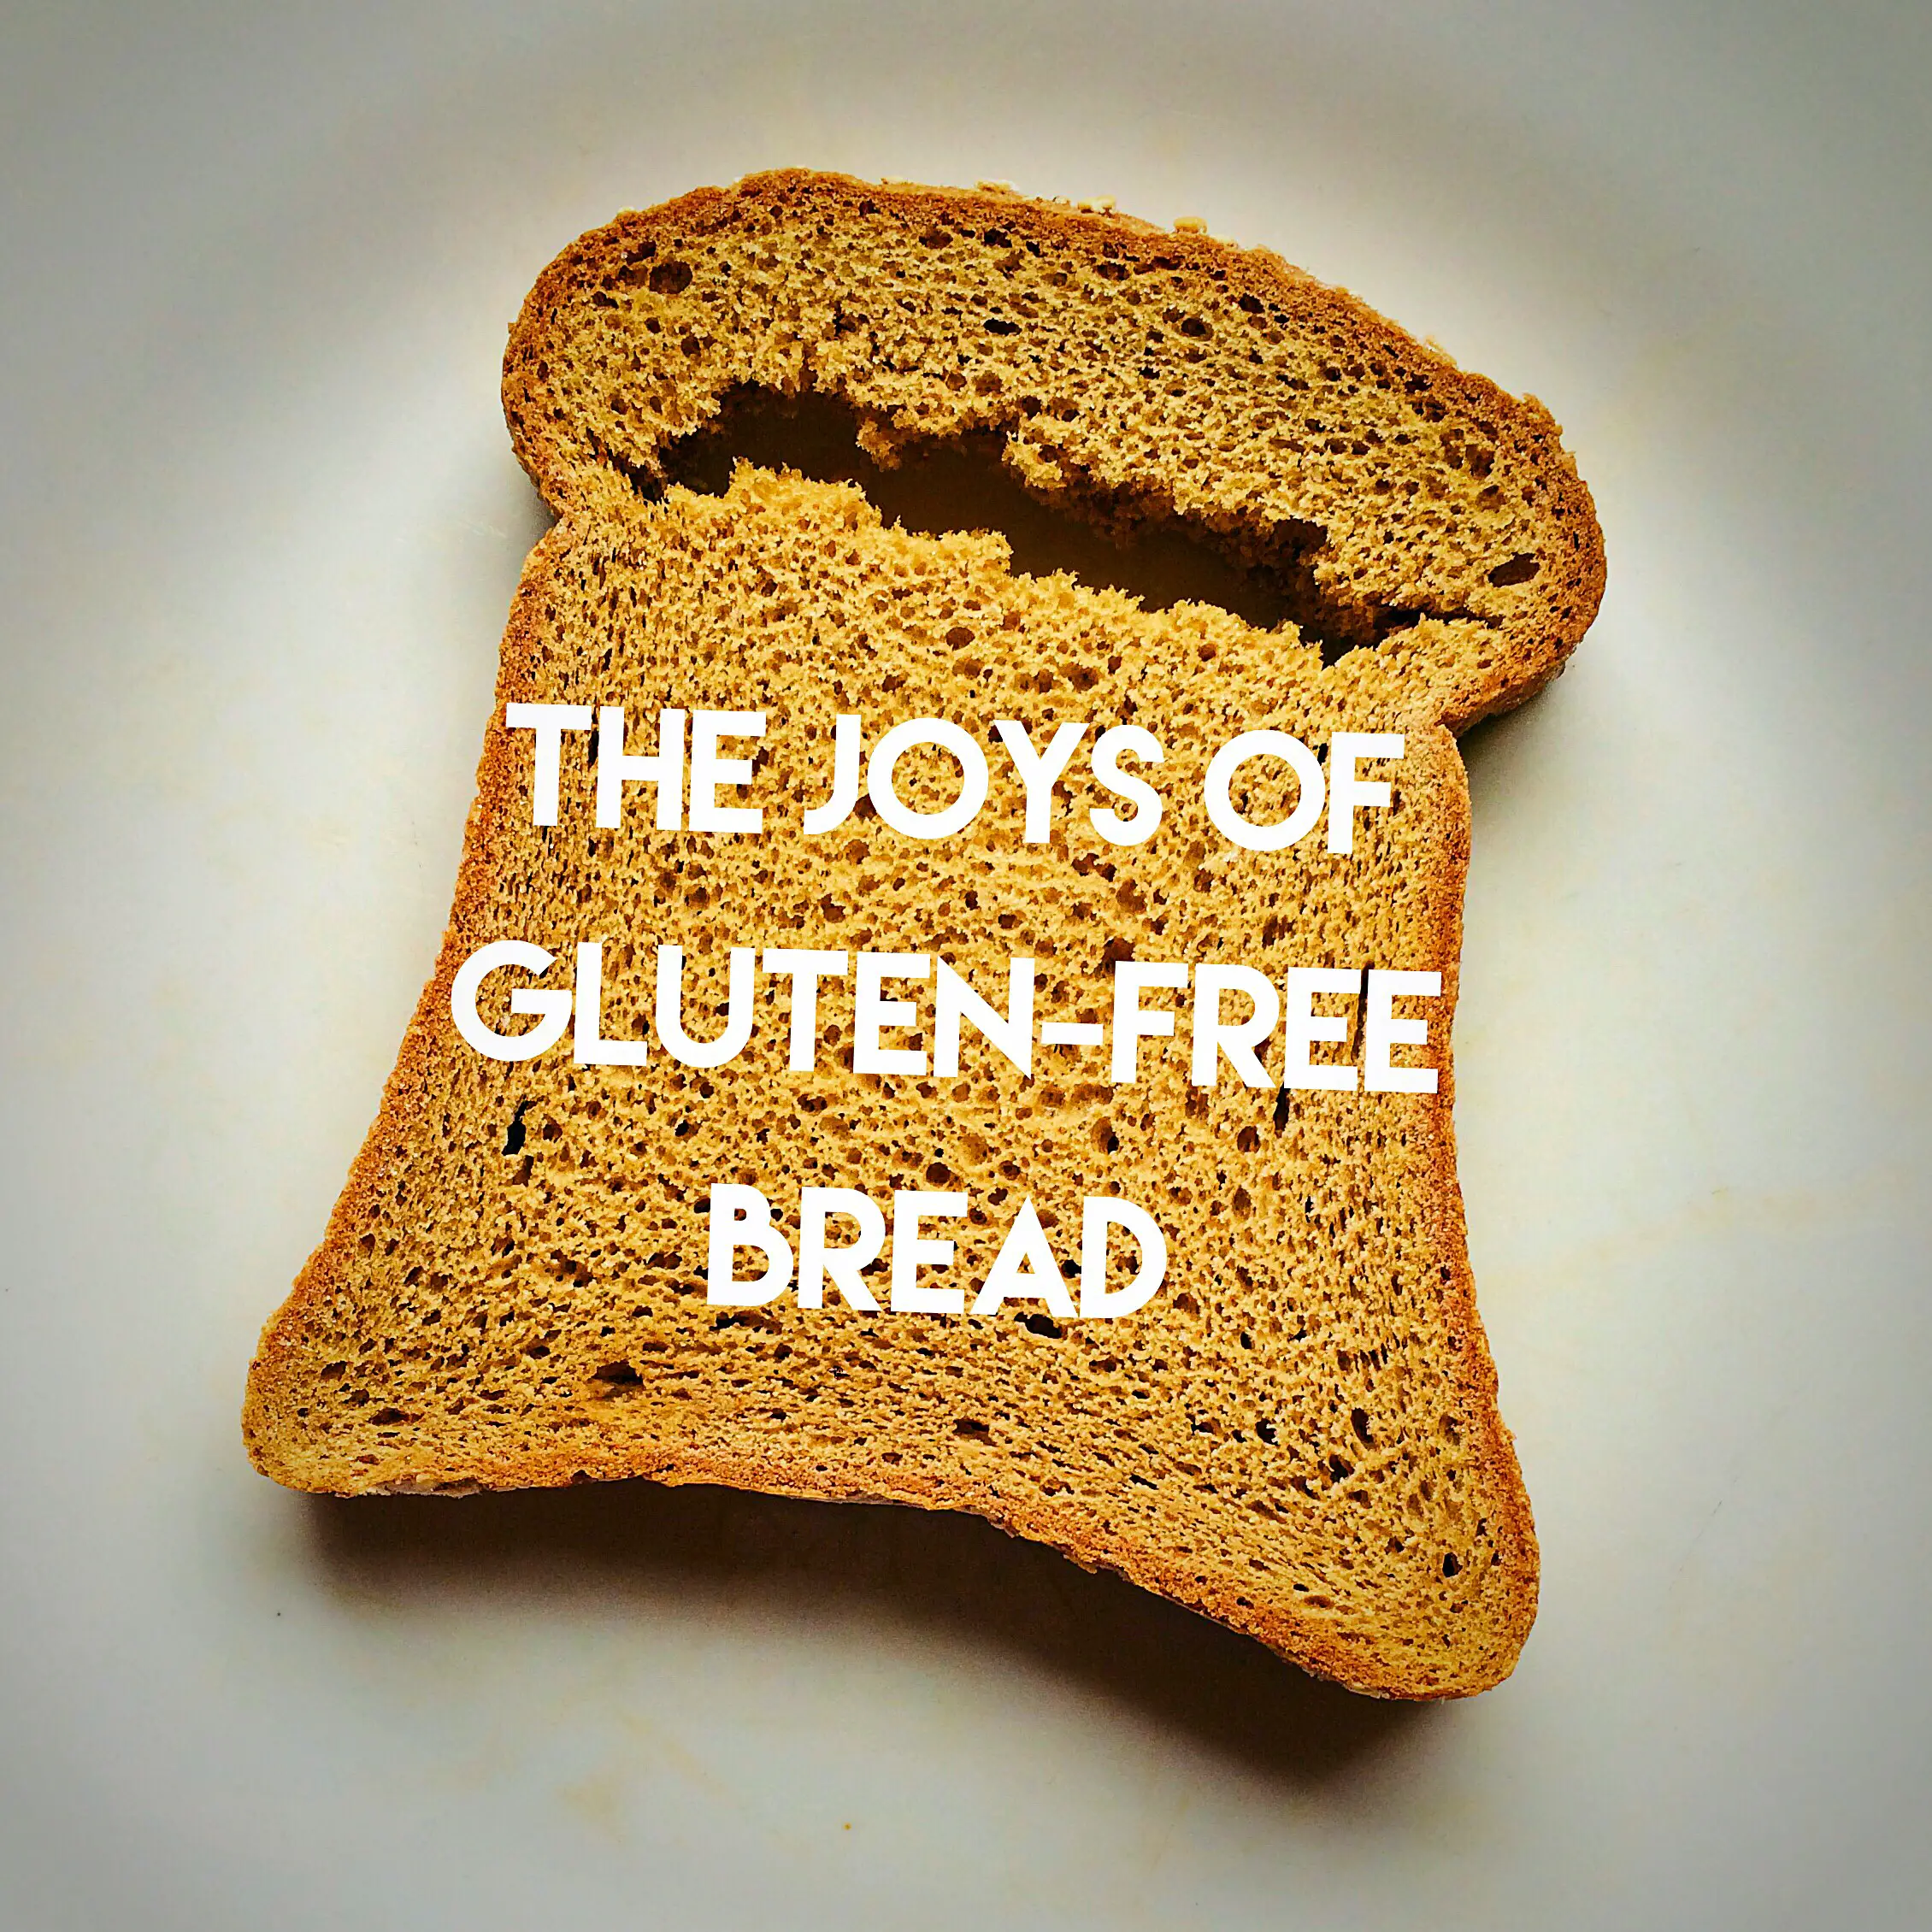 Six Ways to Make Being Gluten